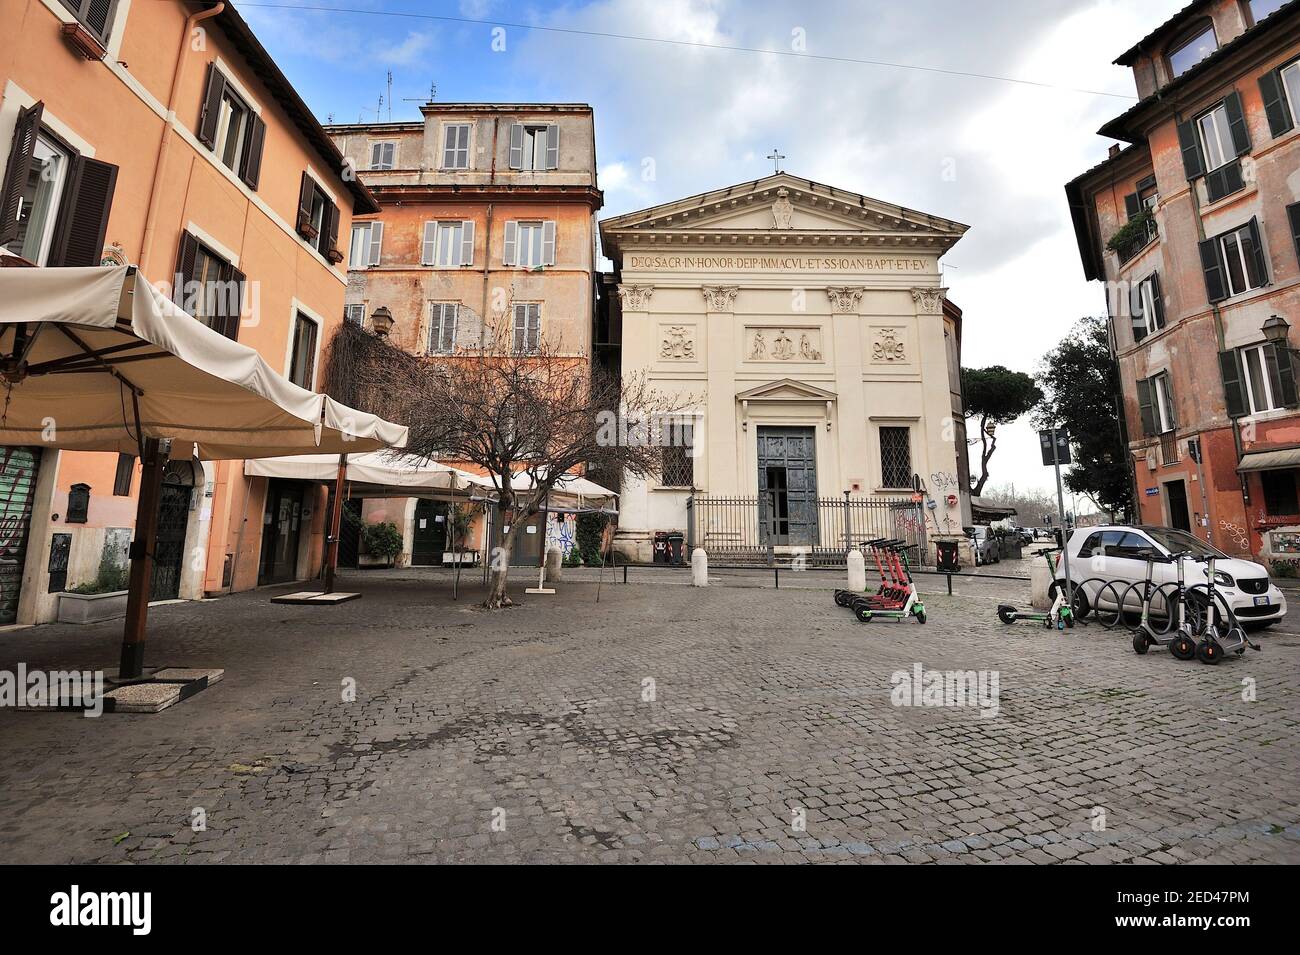 Piazza di San Giovanni della Malva, Trastevere, Rome, Italie Banque D'Images